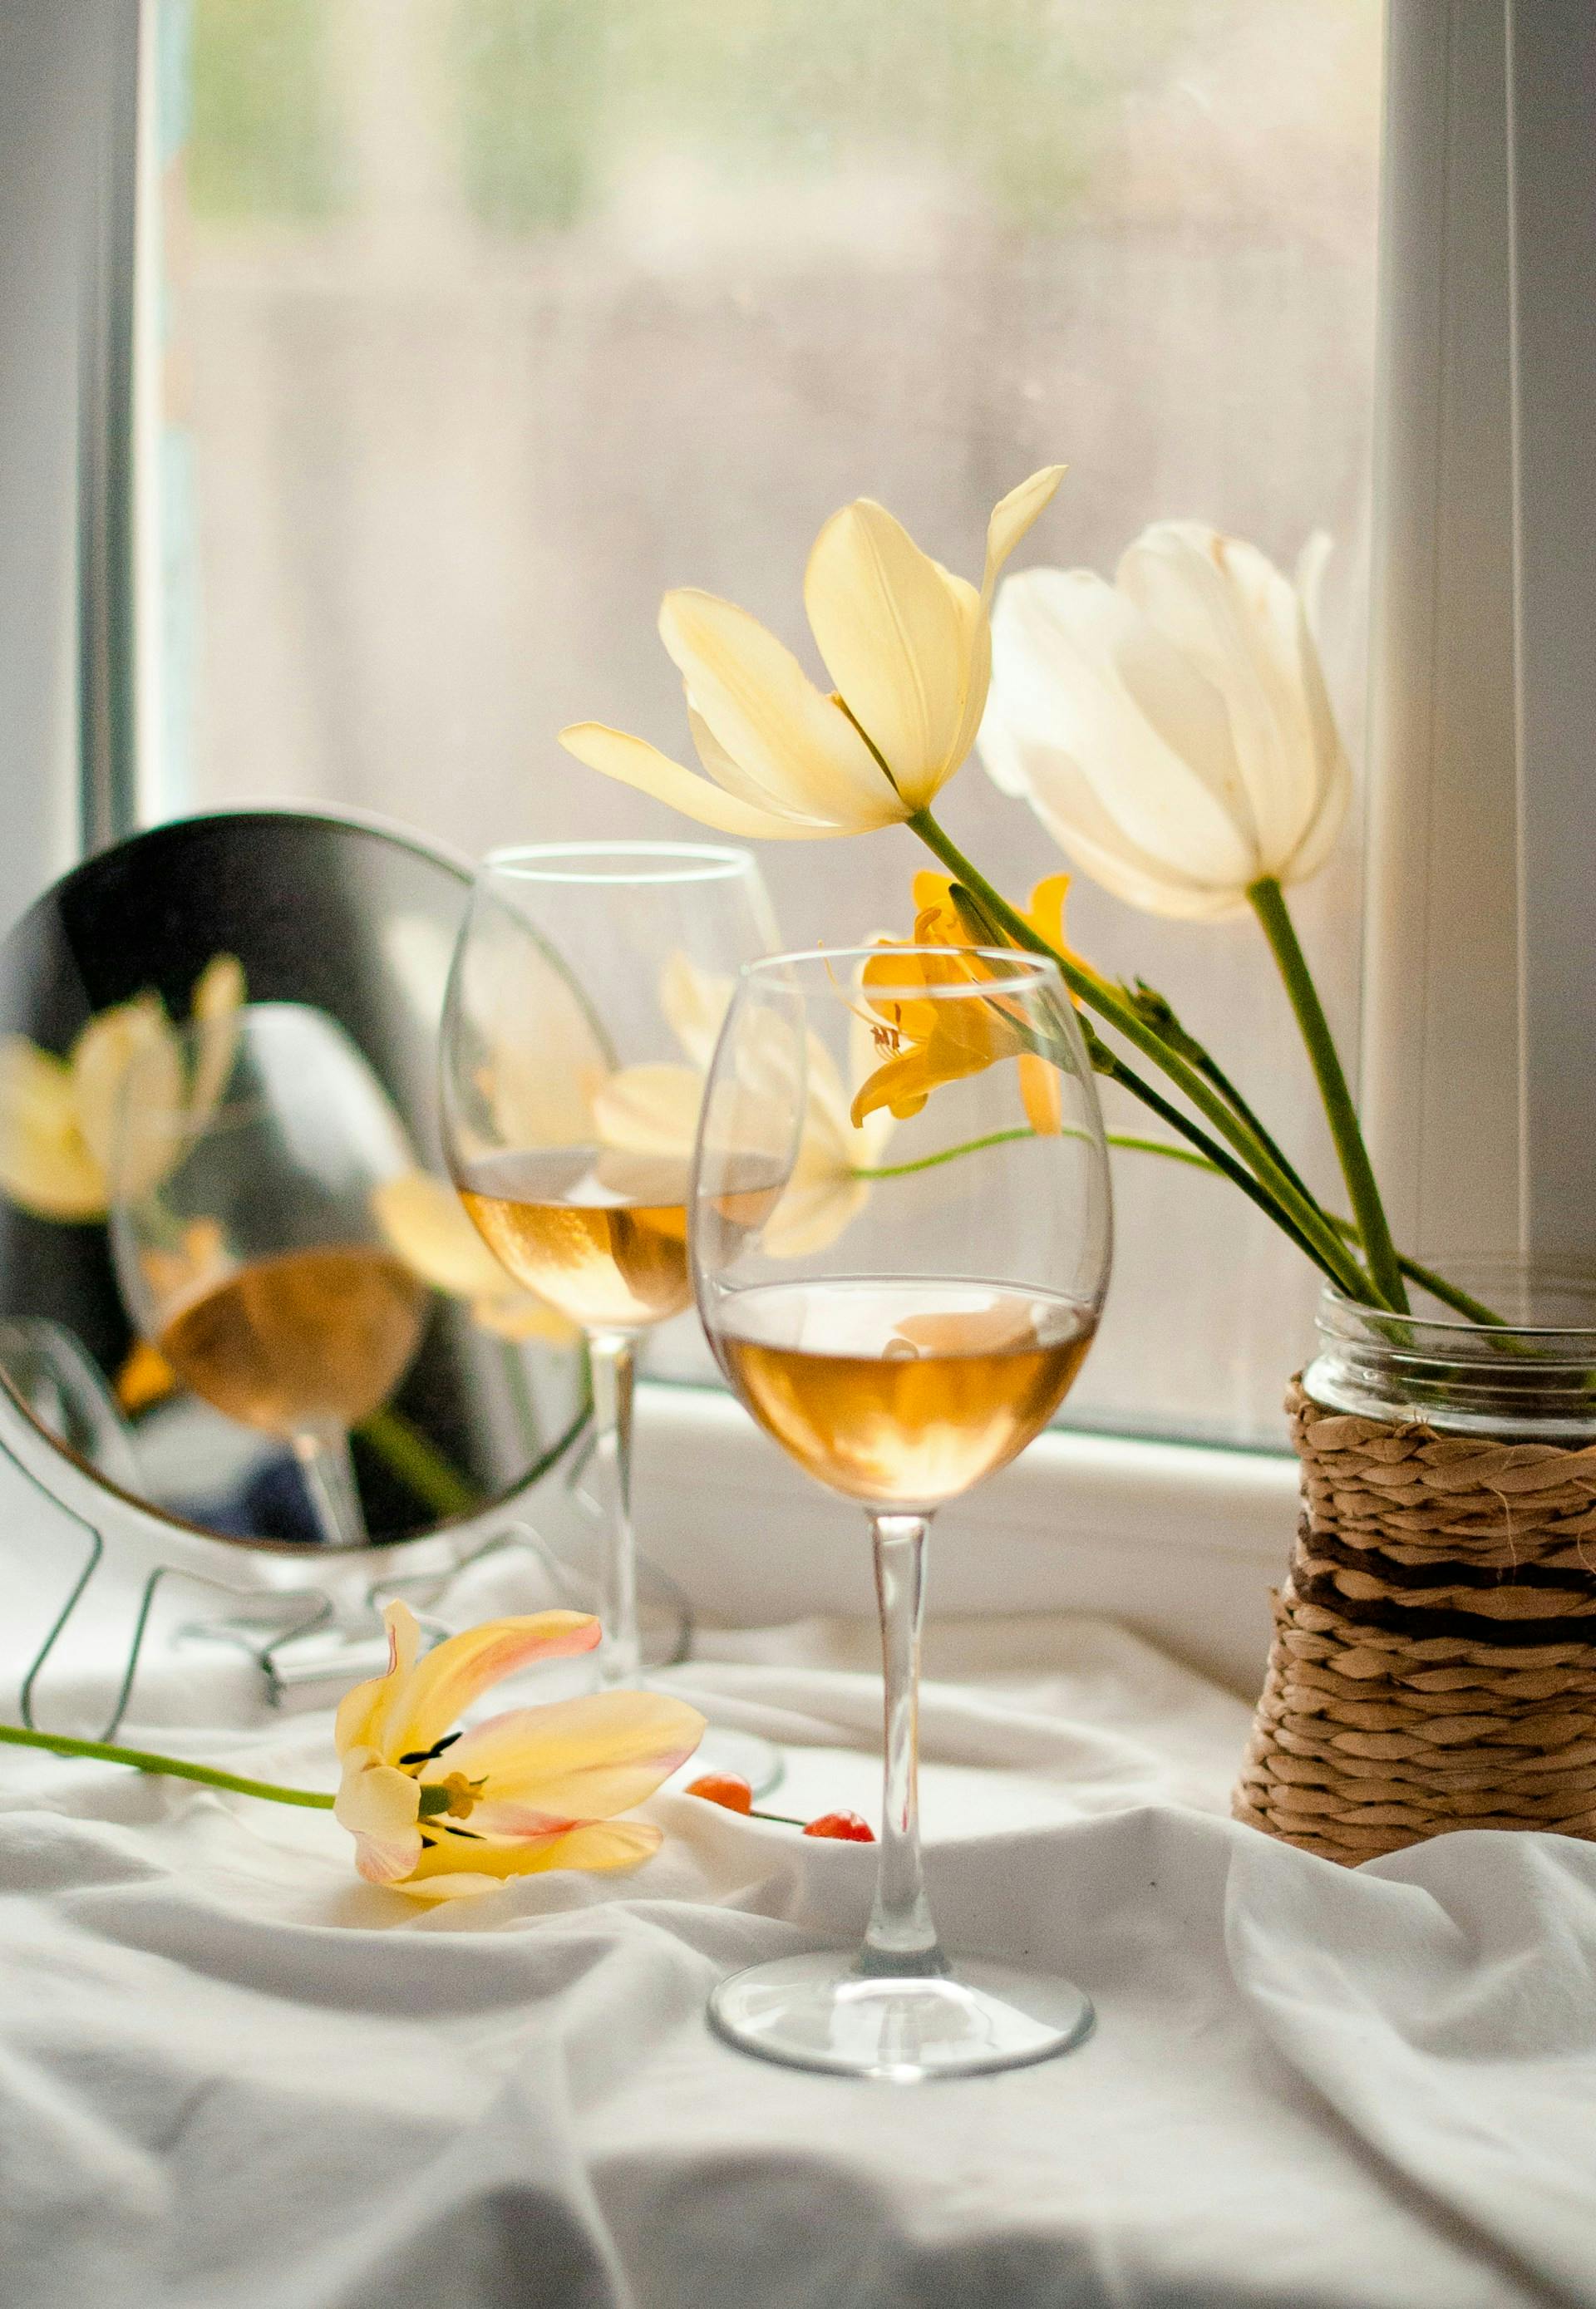 Zwei Gläser mit goldener Flüssigkeit stehen auf weißer Tischdecke neben gelben Blumen.